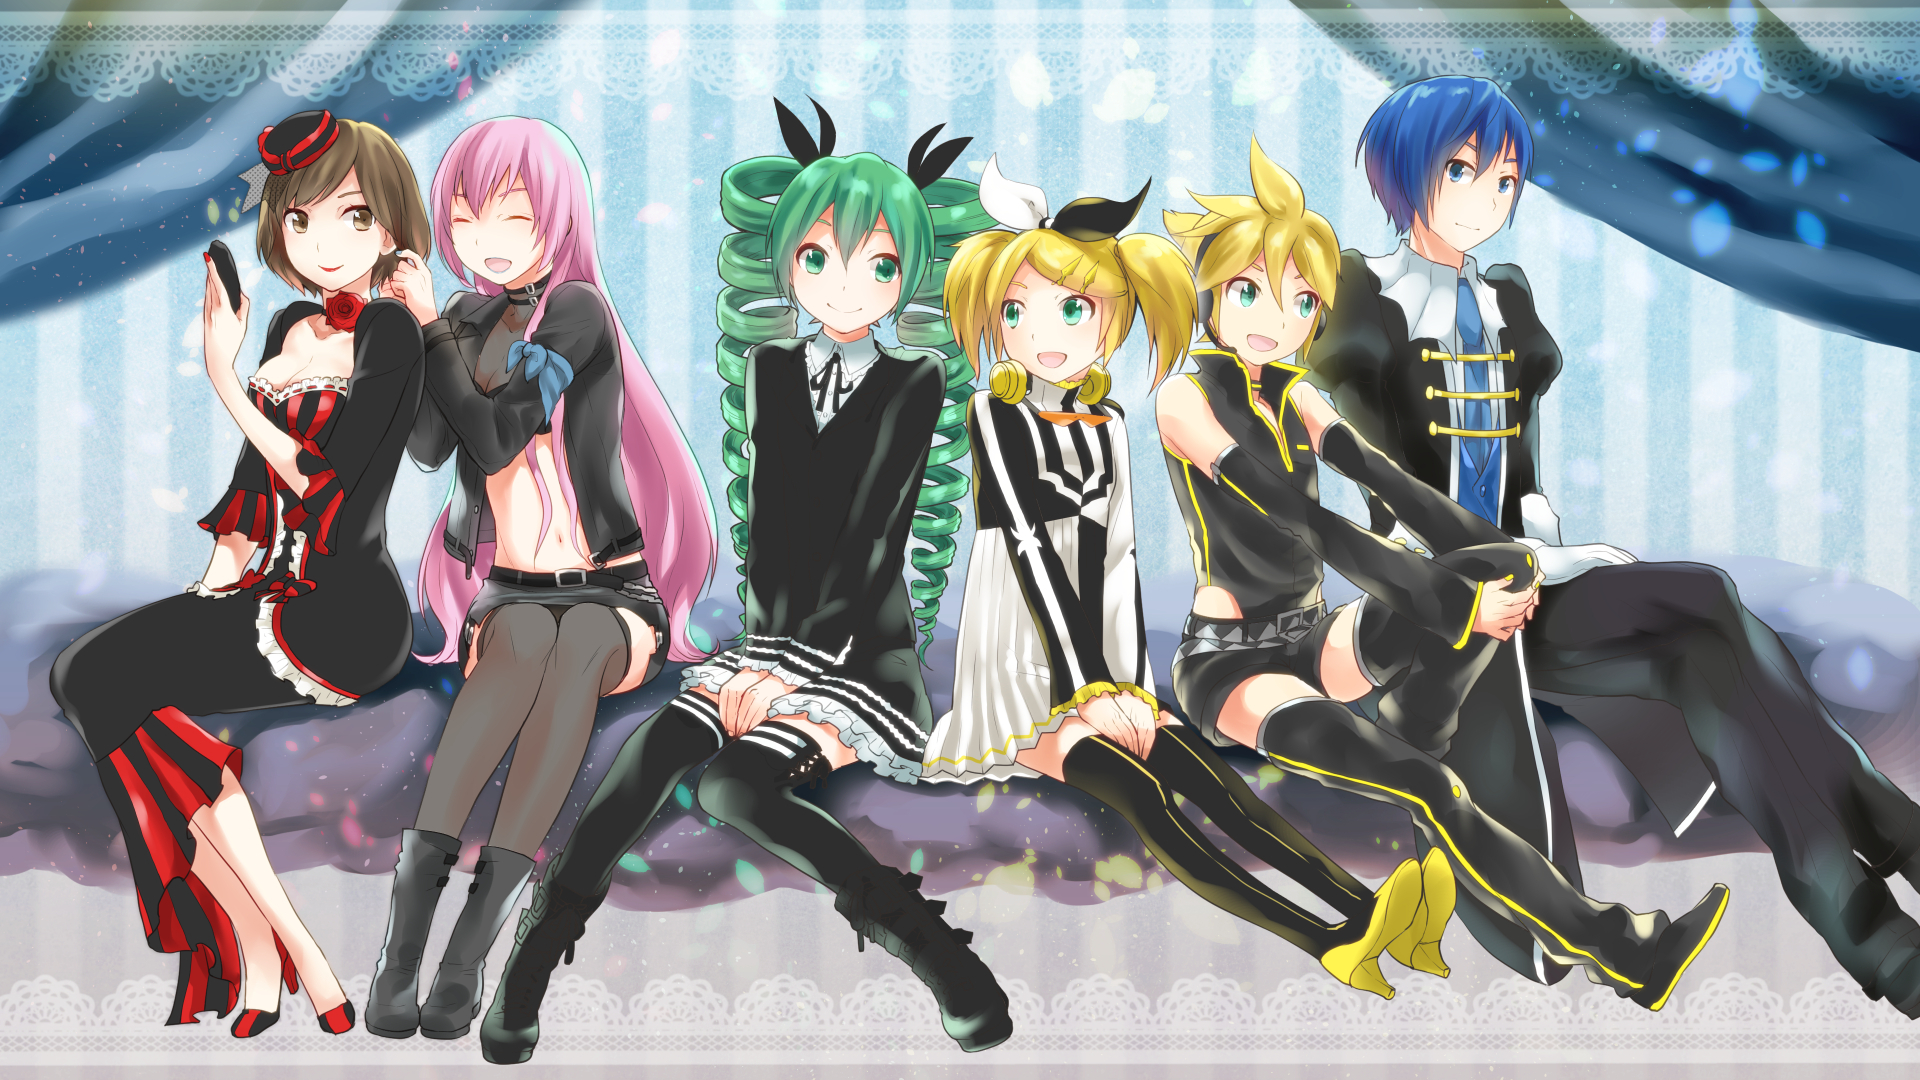 Descarga gratuita de fondo de pantalla para móvil de Vocaloid, Luka Megurine, Animado, Hatsune Miku, Rin Kagamine, Kaito (Vocaloid), Len Kagamine, Meiko (Vocaloid), Proyecto Diva.